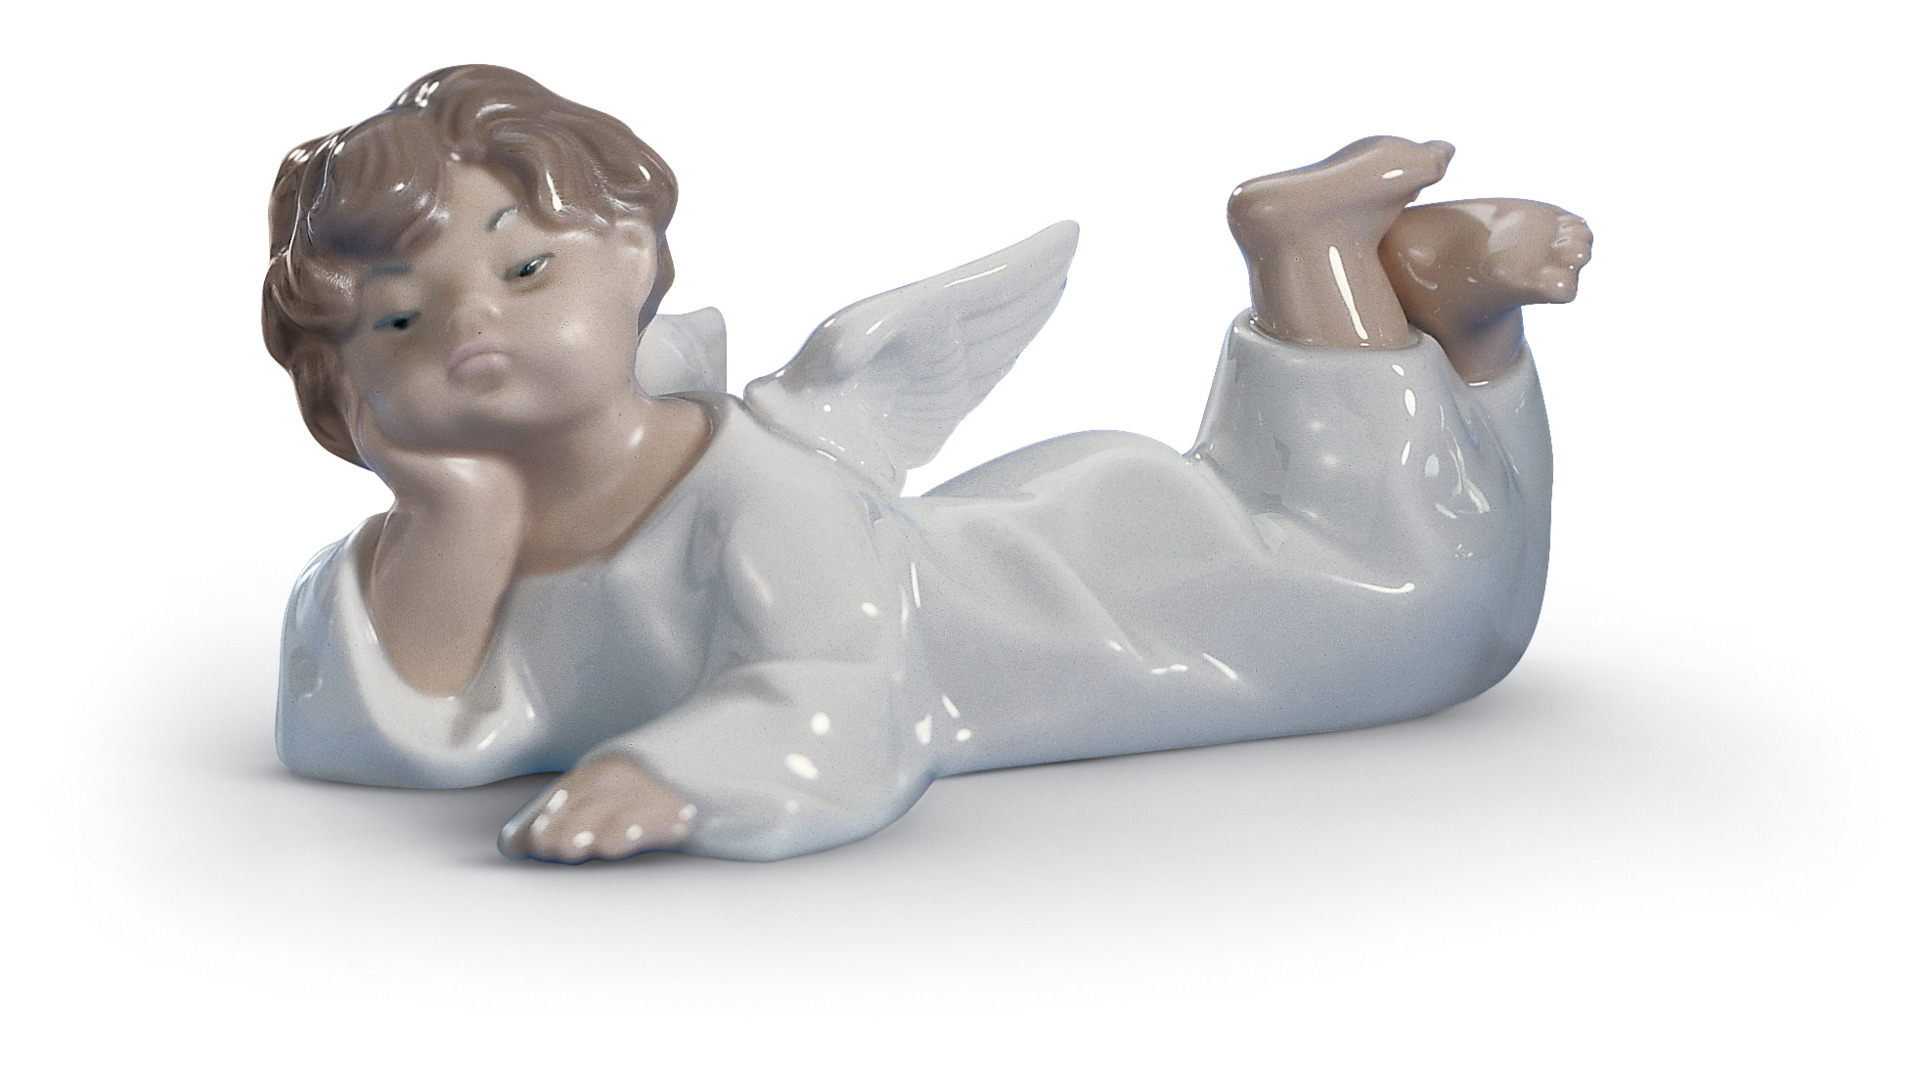 Фигурка Lladro Лежащий ангел 14х6 см, фарфор